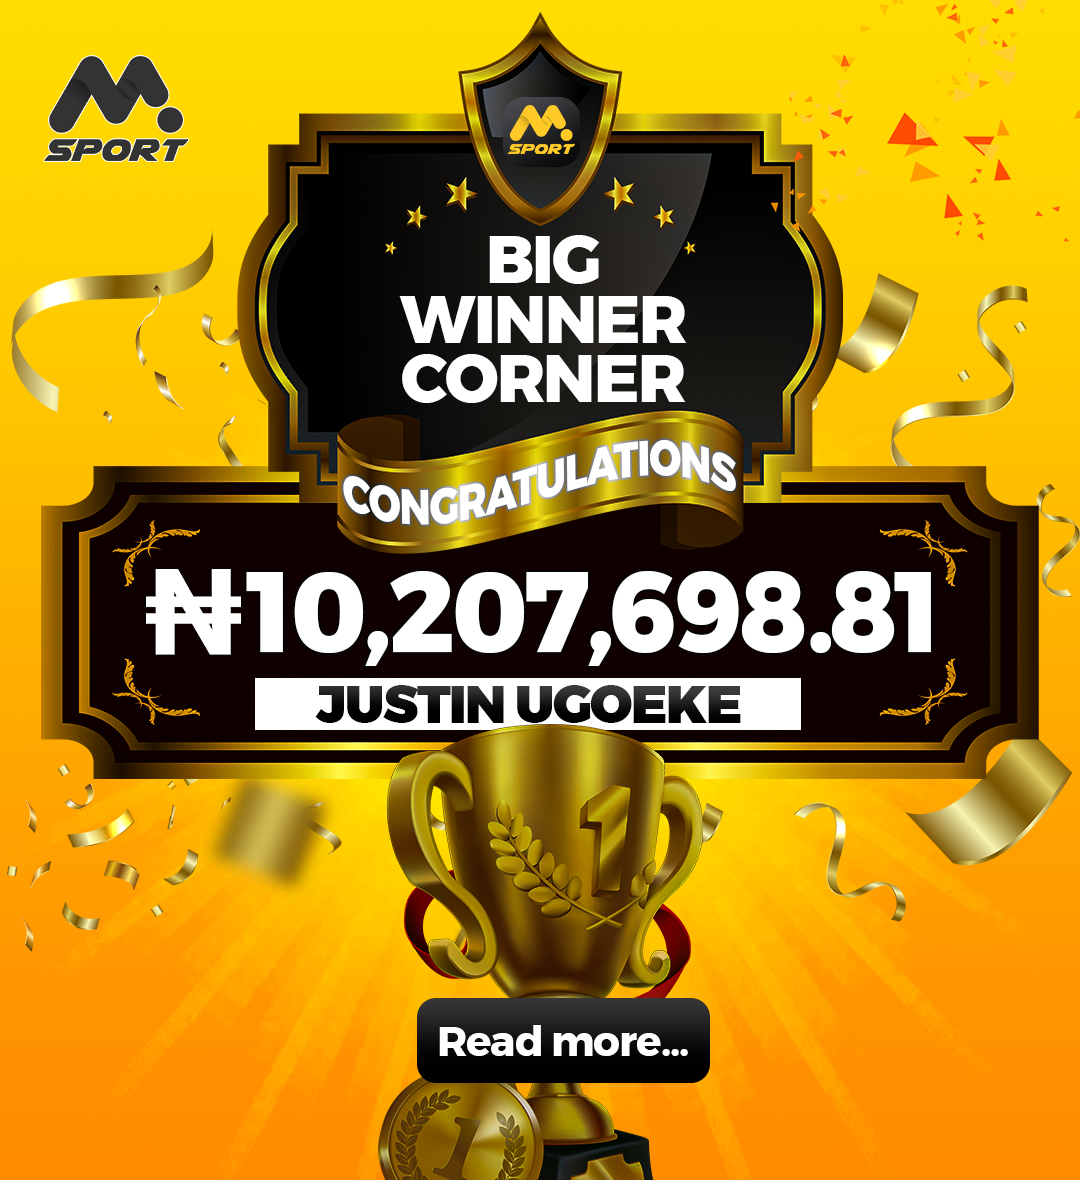 MSport Customer, Justin, Wins 10 Million Naira with 1,000 Naira Stake